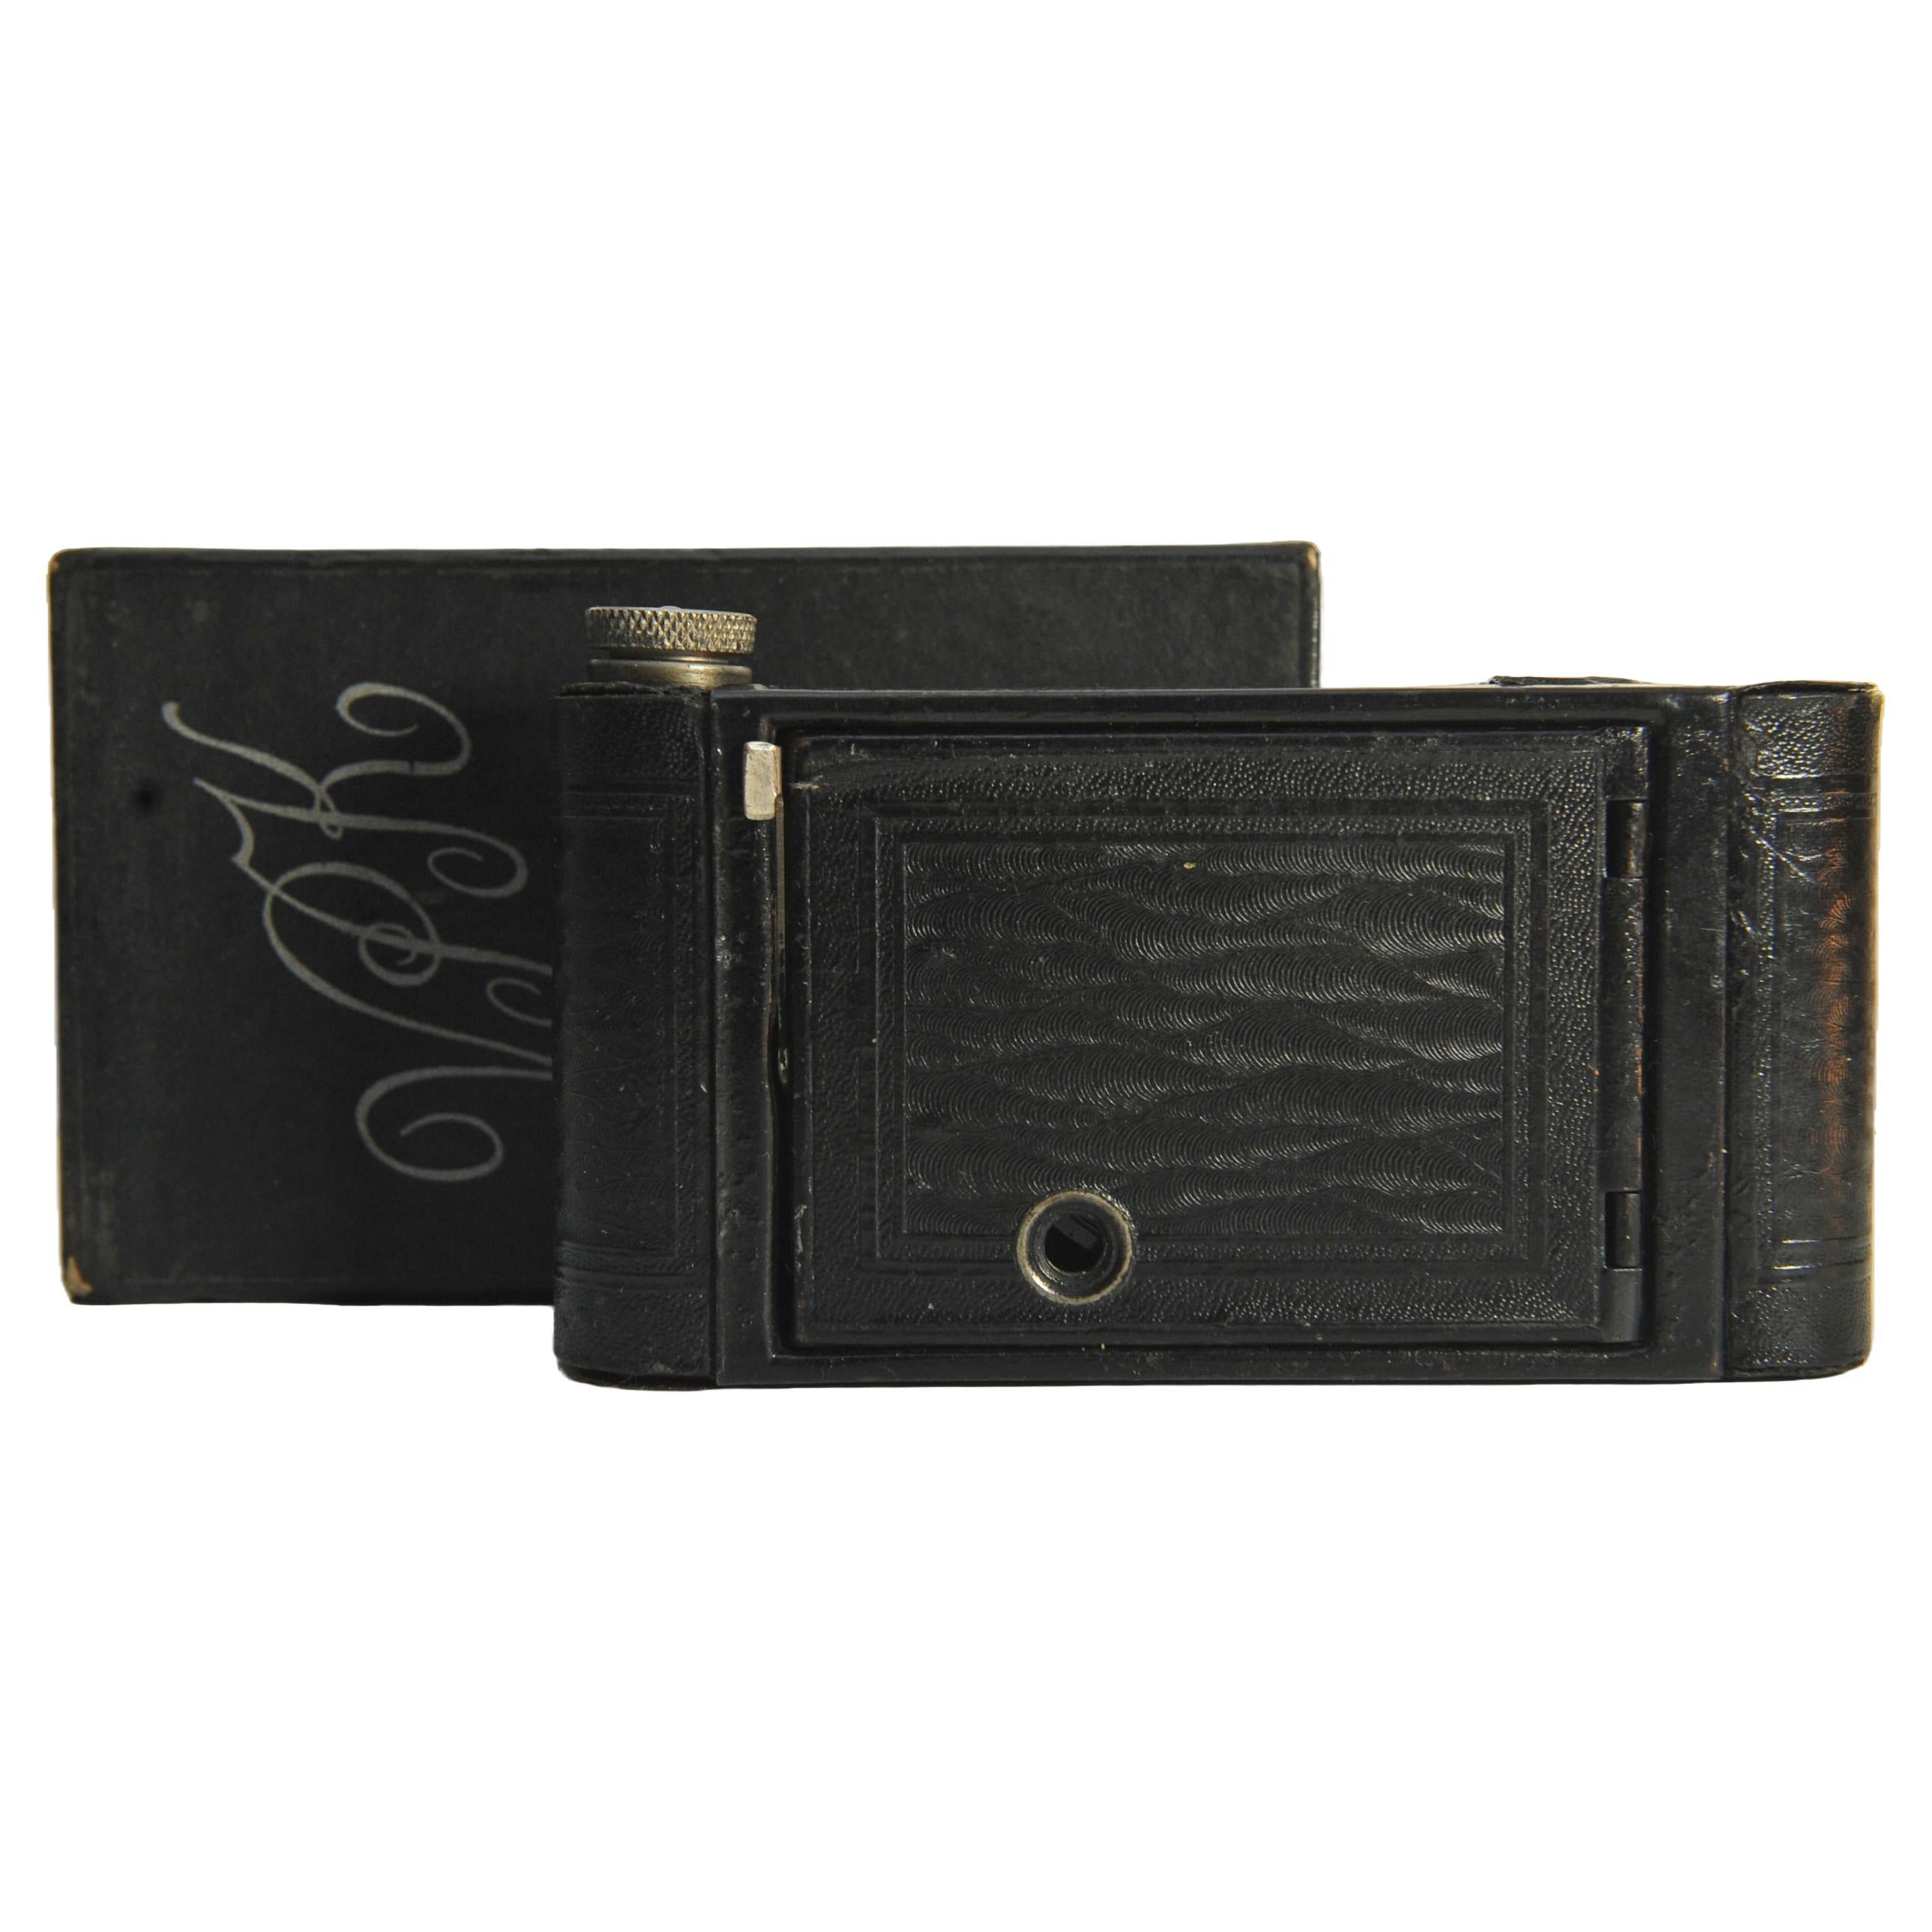 Eastman Kodak Vest Pocket Model B 127 Film Folding Camera mit Original-Marken-Karton-Box & Papier-Booklet 

Ref: 27323

Um 1925 kam ein Nachfolger der Vest Pocket Kodak auf den Markt, das Modell B. Ein völlig neues Design, das zu den anderen Kameras